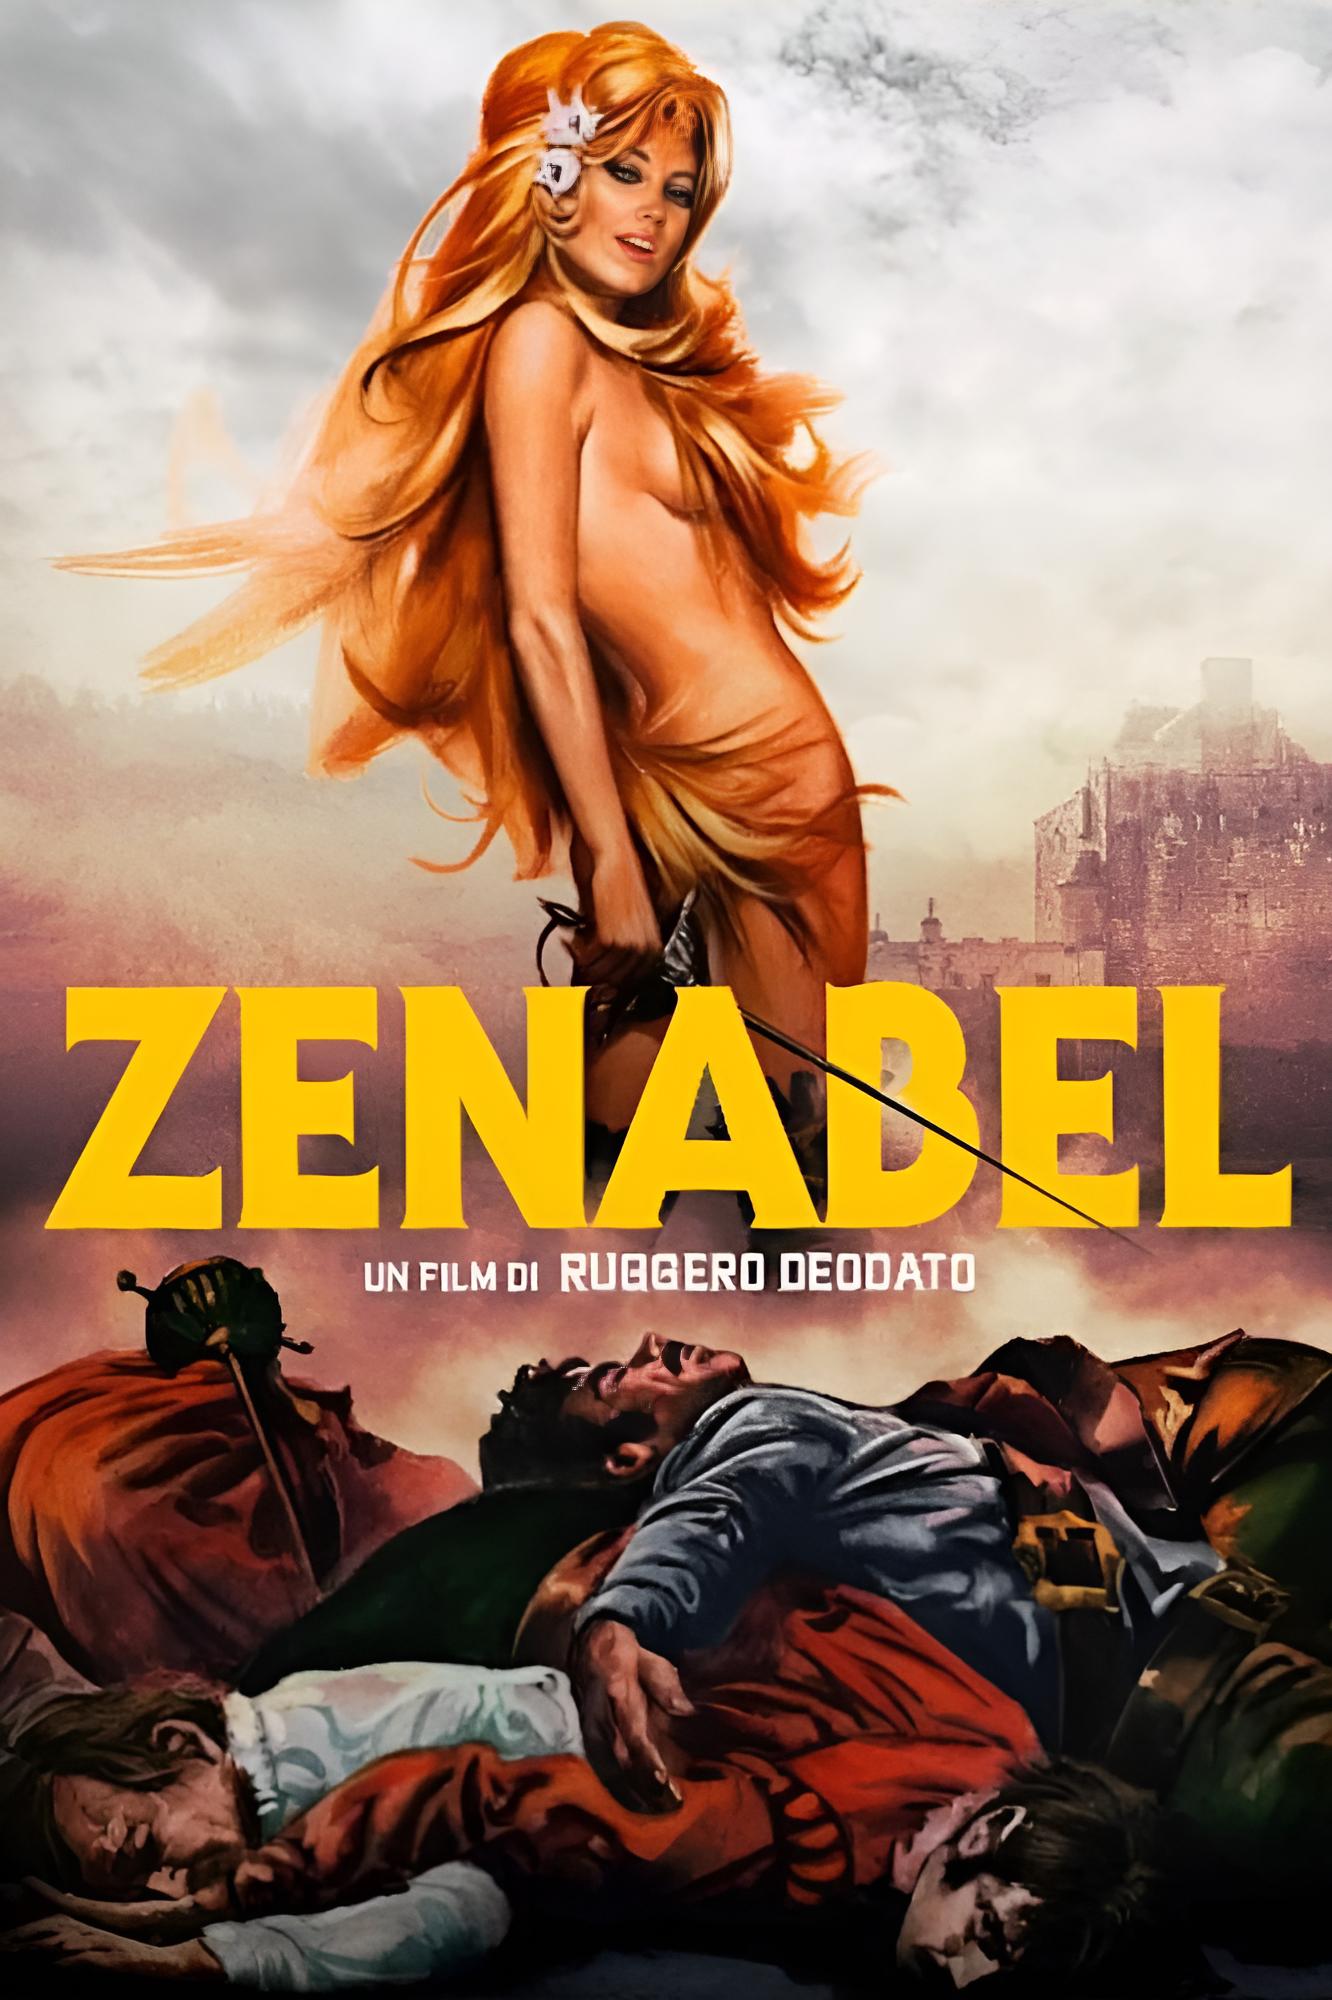 Zenabel [HD] (1969)